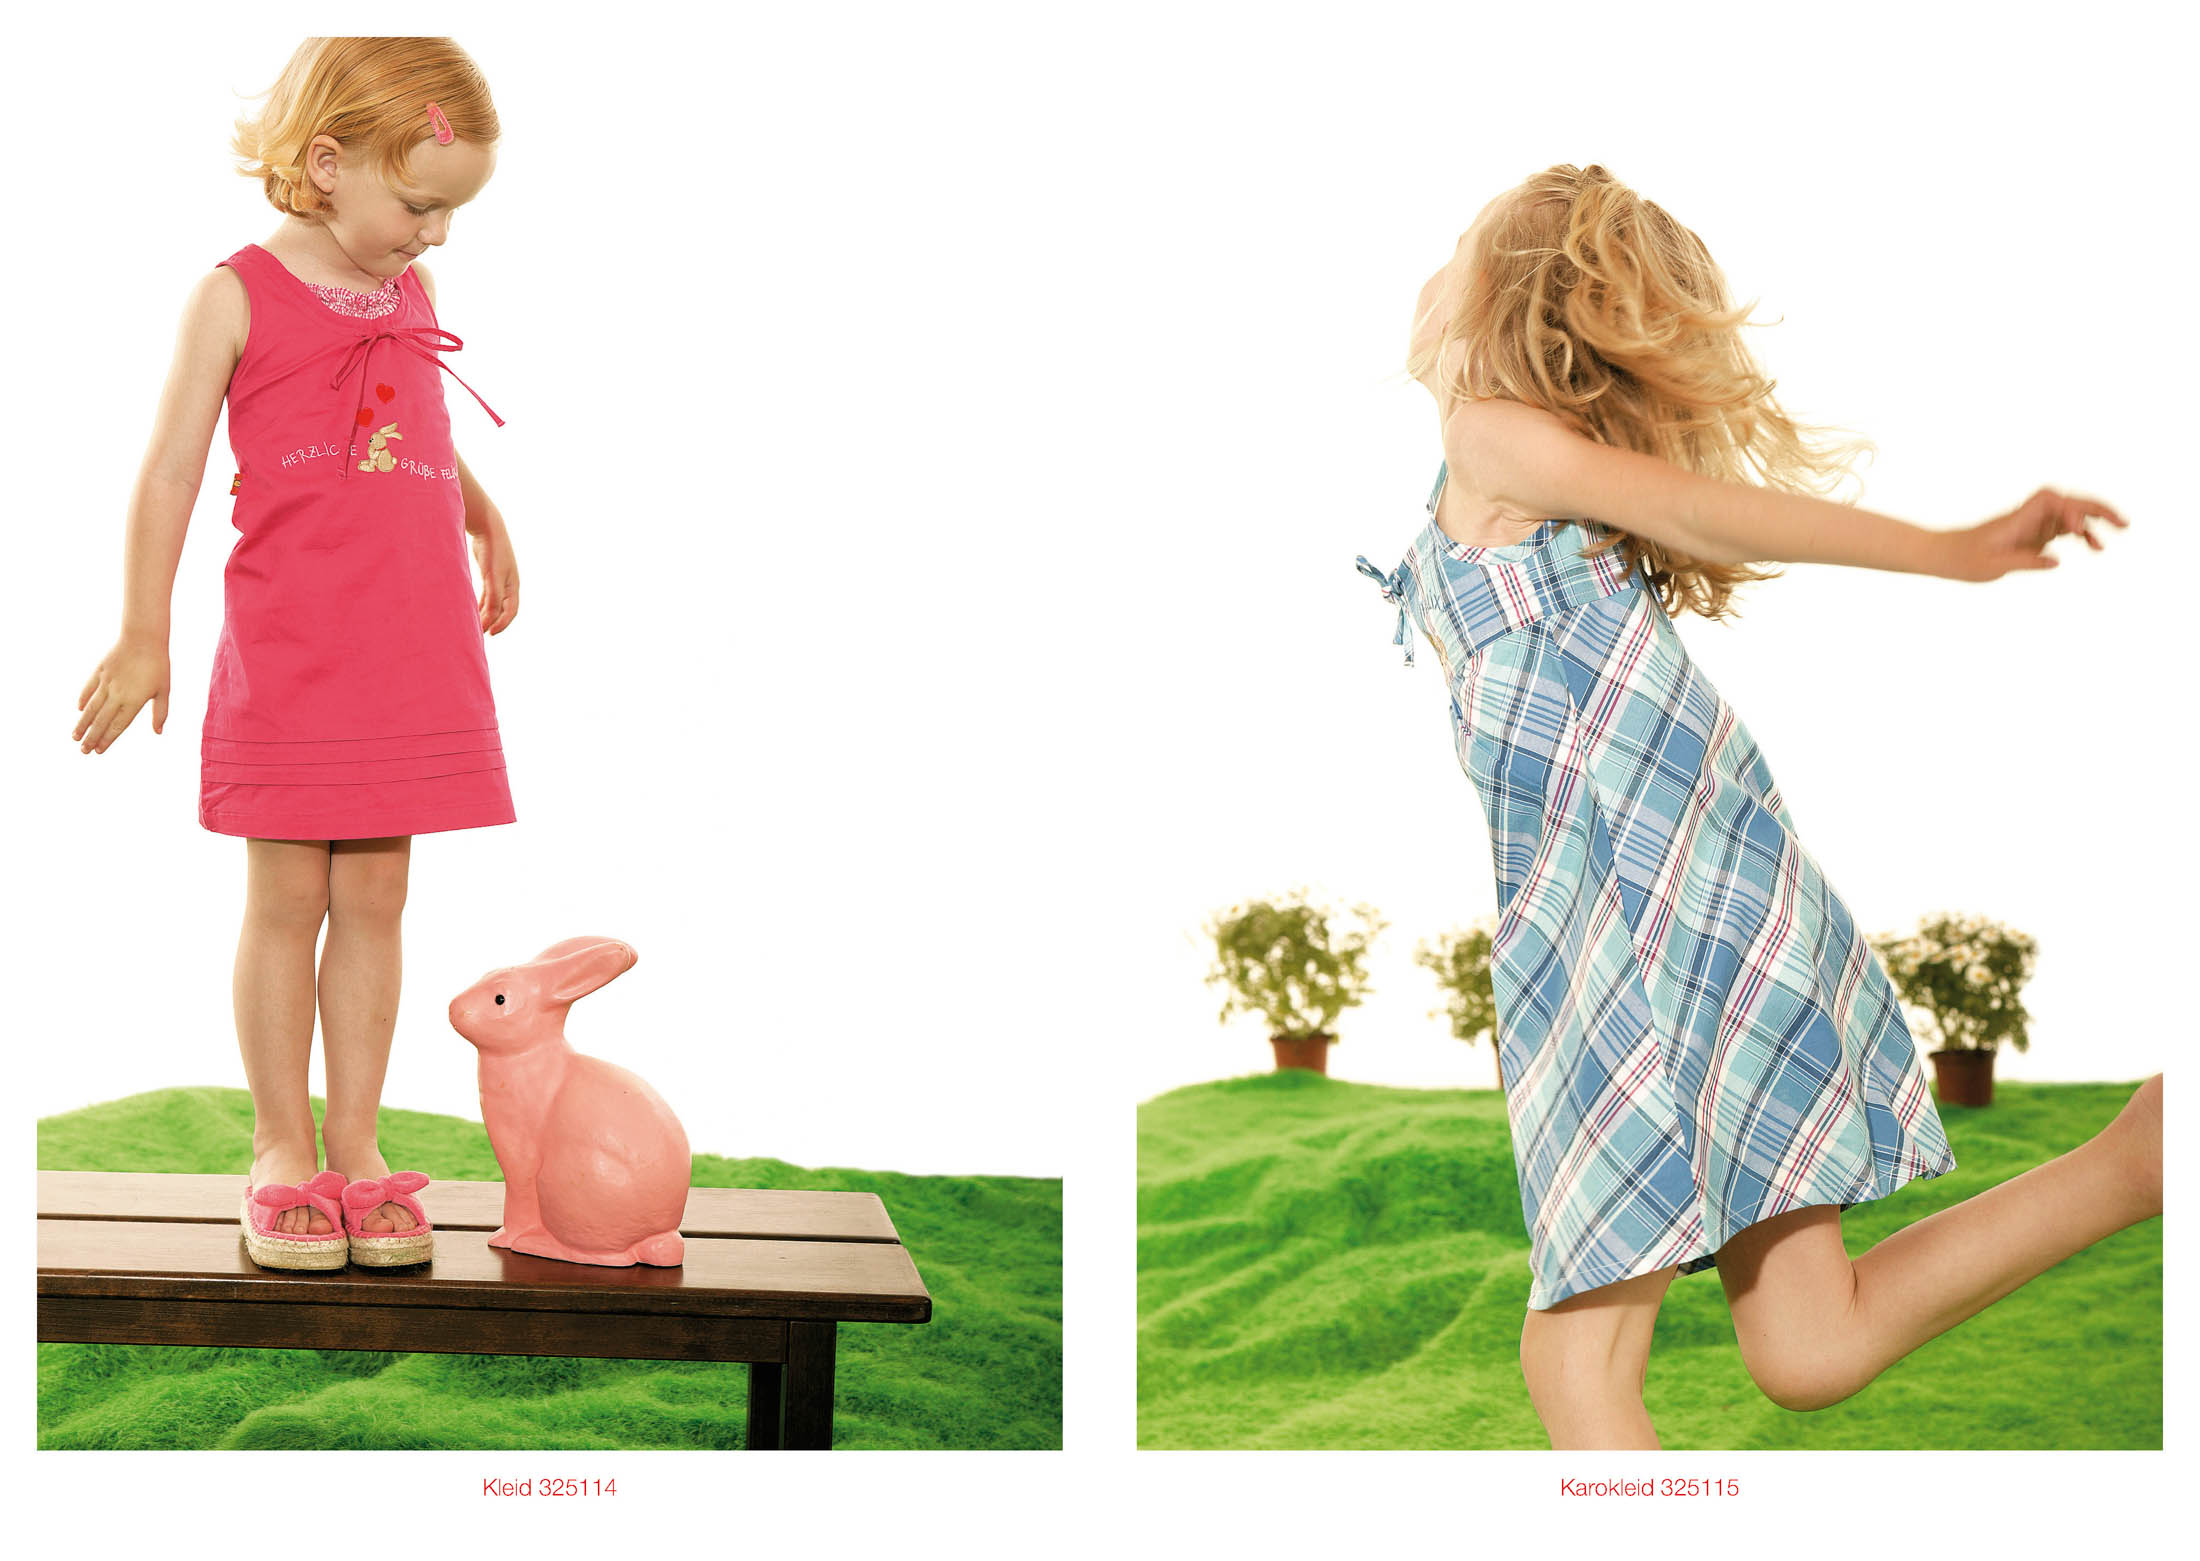 Links: Ein junges Mädchen in einem rosa Kleid steht neben einer rosa Hasenfigur auf einem Holztisch. Rechts: Ein Mädchen in einem karierten Kleid dreht sich fröhlich auf einer Wiese. © Fotografie Tomas Rodriguez